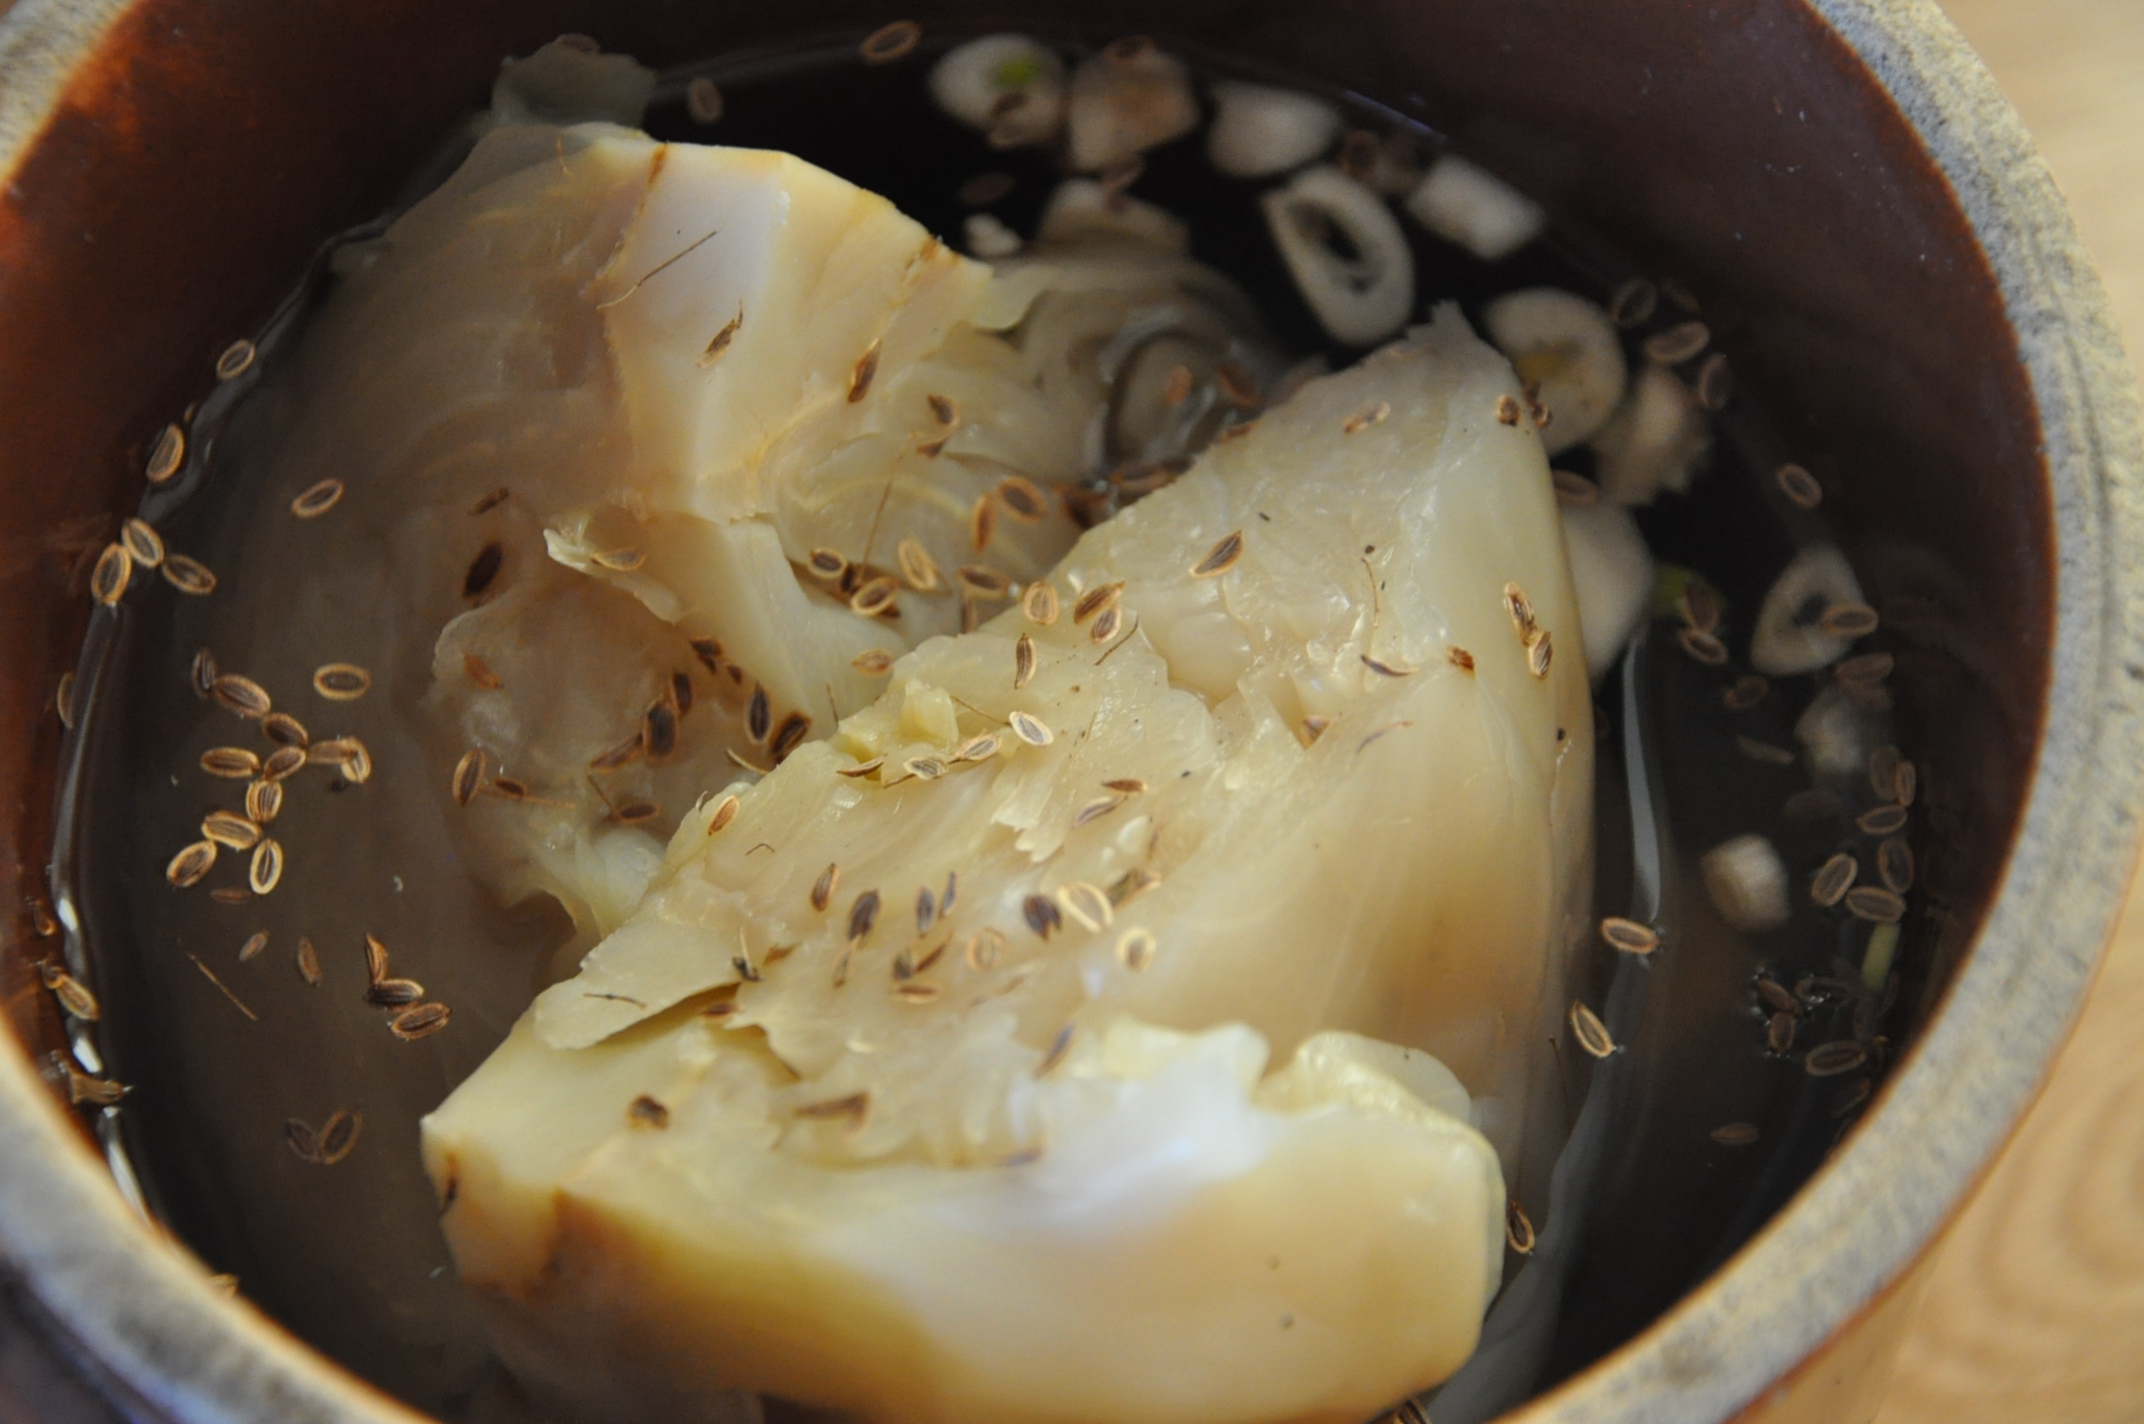 Kulasza, krężałki i zupa jabłkowa. Nowe produkty z Lubelskiego na Liście Produktów Tradycyjnych (zdjęcia)